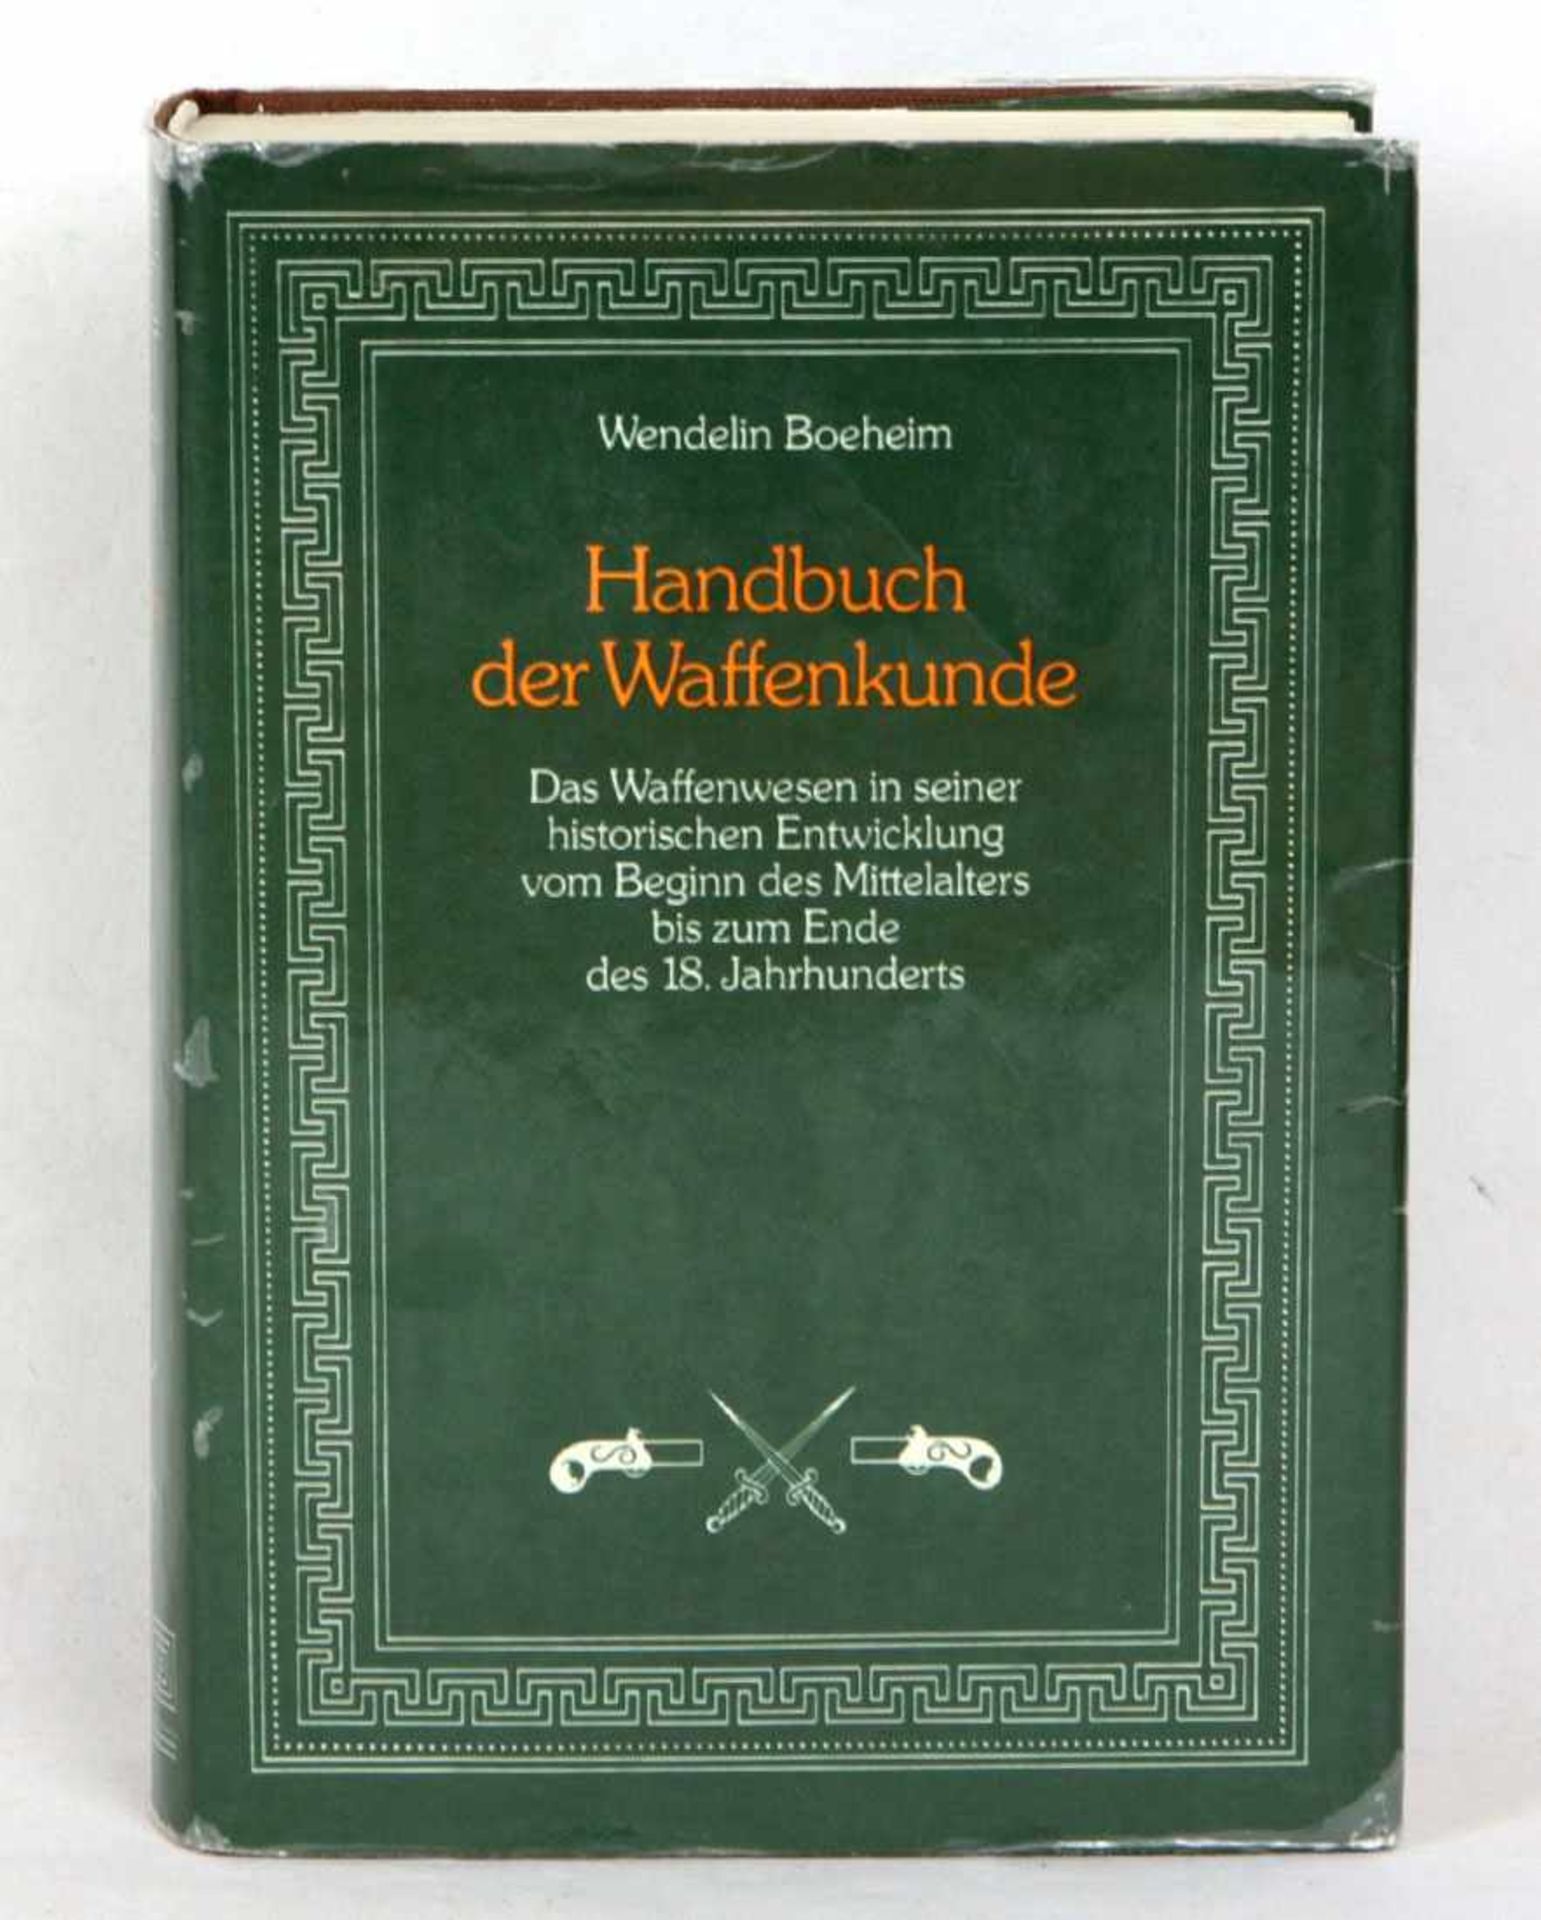 Handbuch der Waffenkunde Seemanns Kunstgewerbliche Handelsbücher, VII. *Waffenkunde* von Wendelin